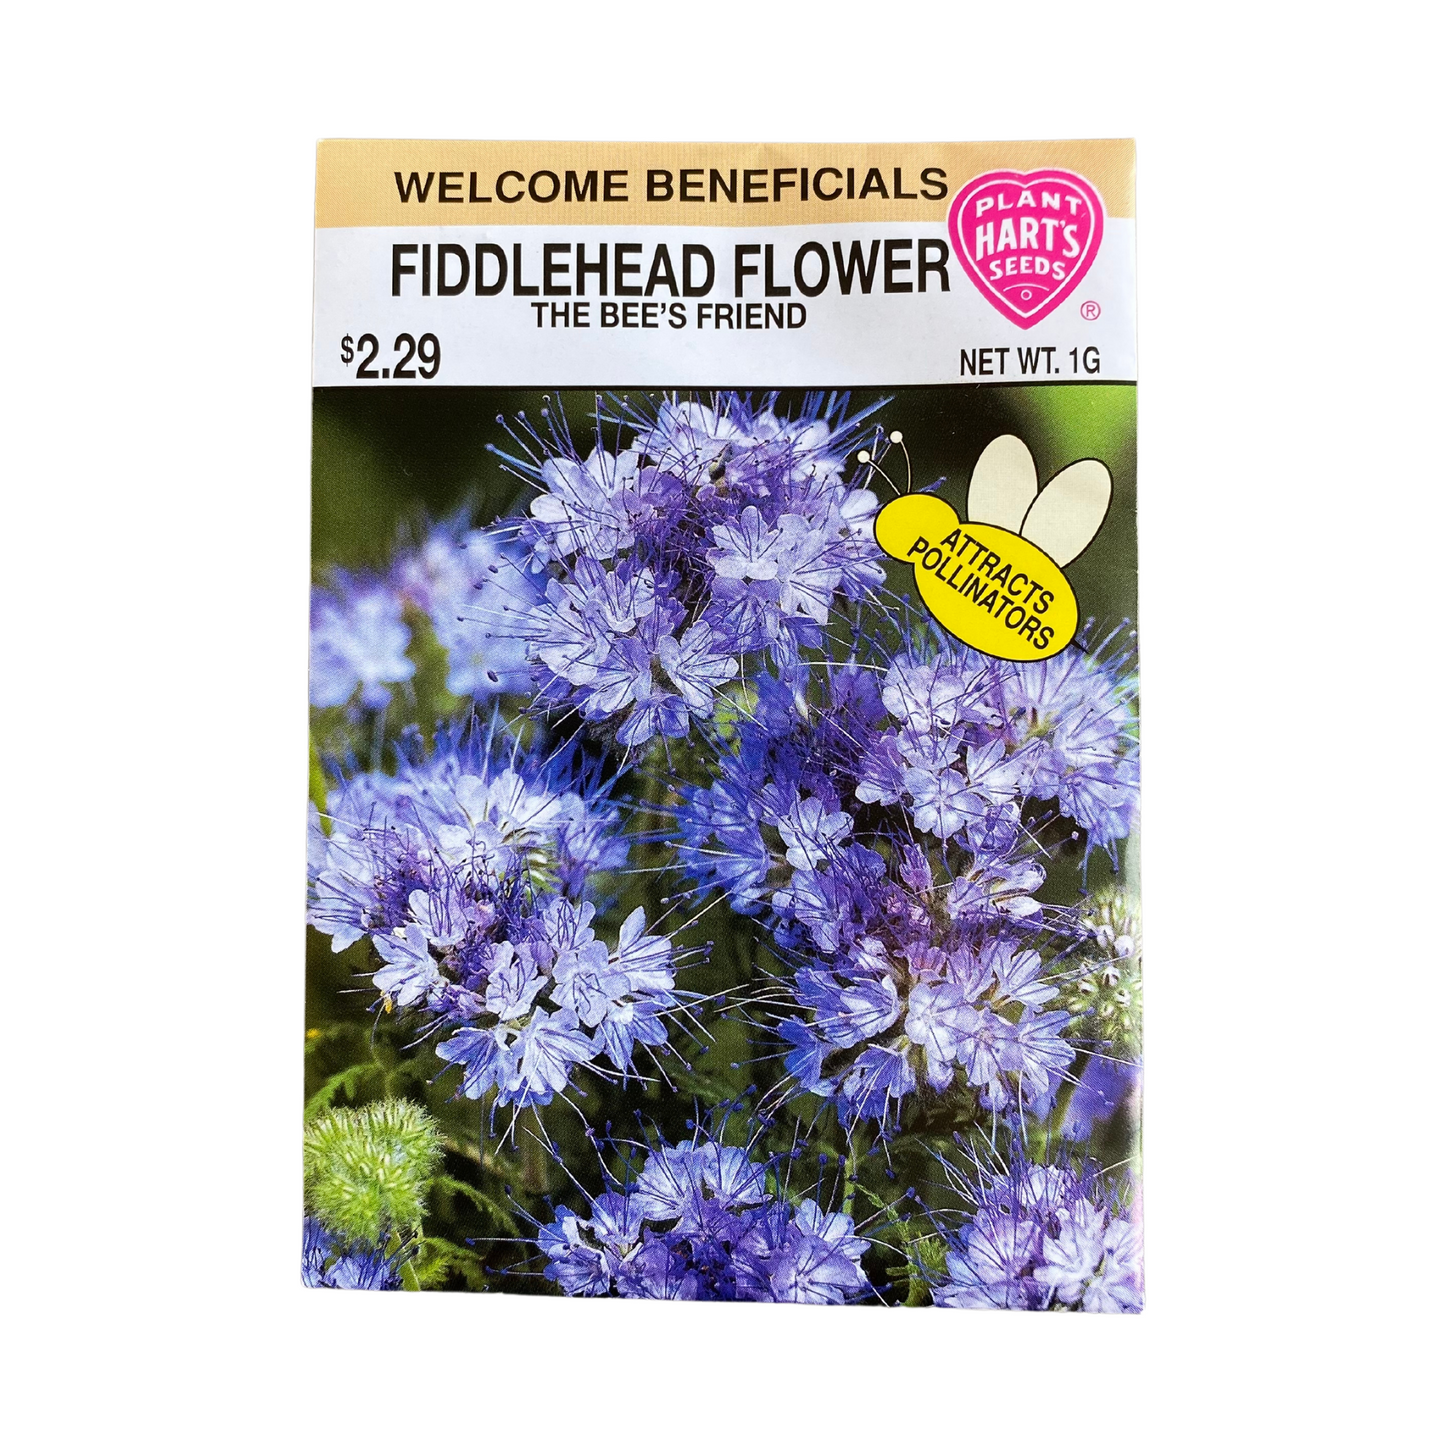 Fiddlehead Flower (Bee's Friend)